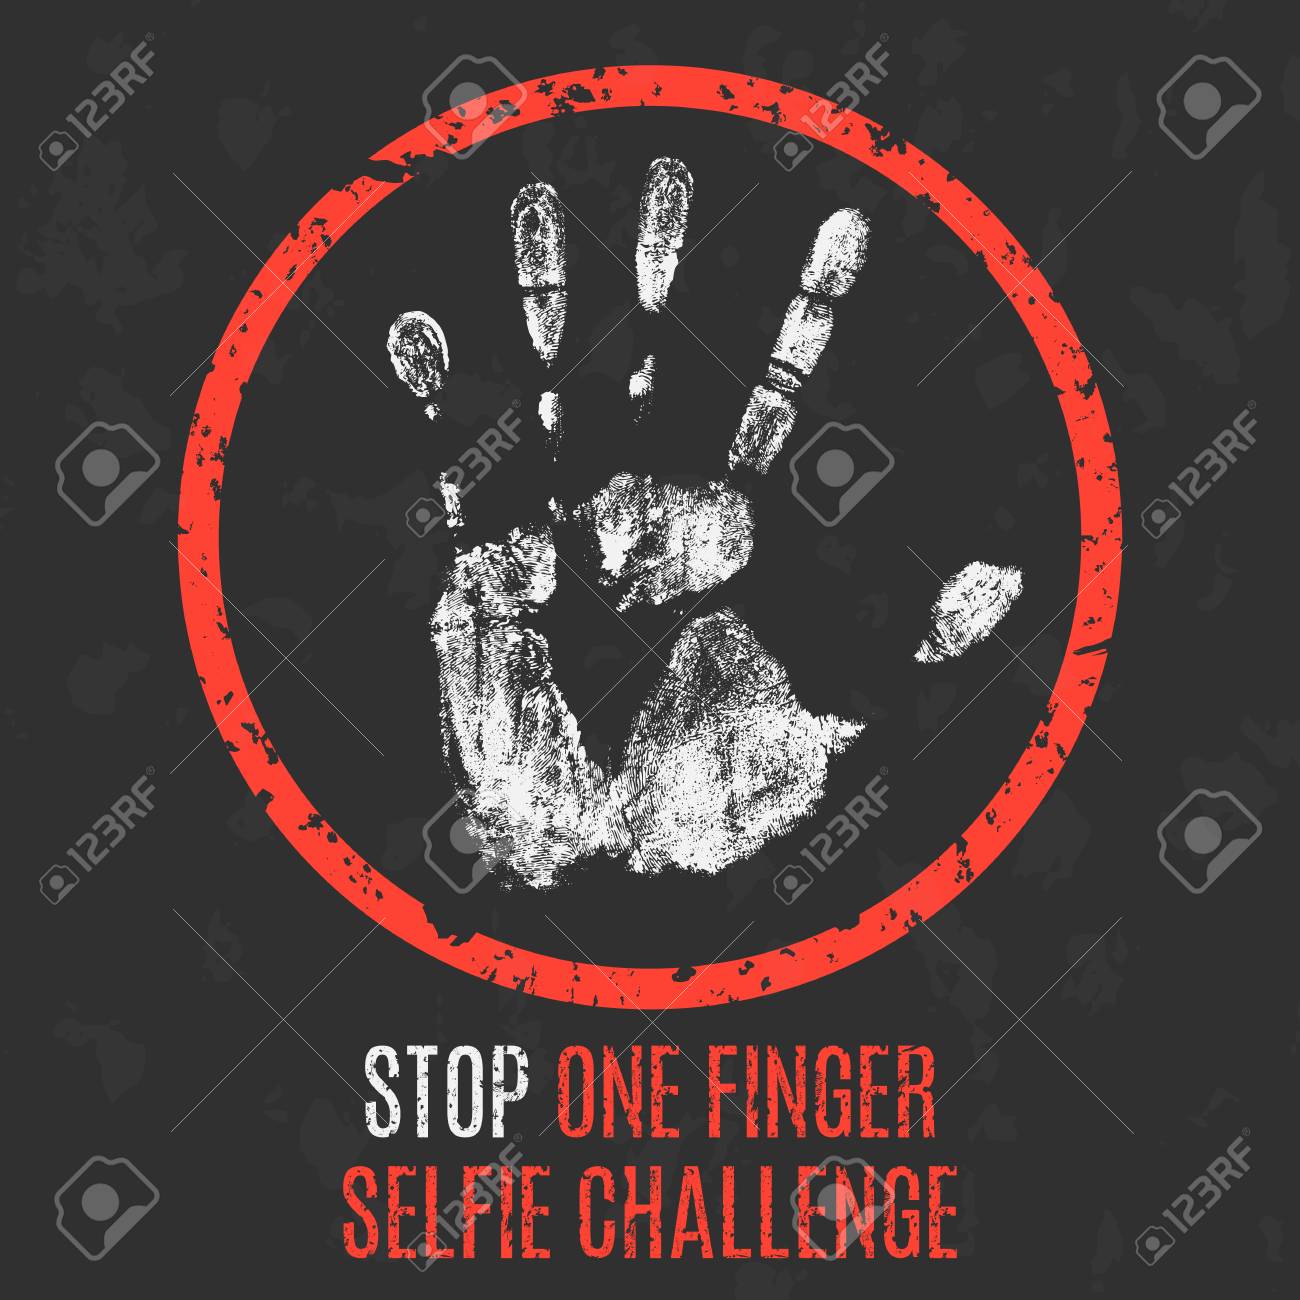 darlene legaspi recommends one finger selfie challenge photos pic